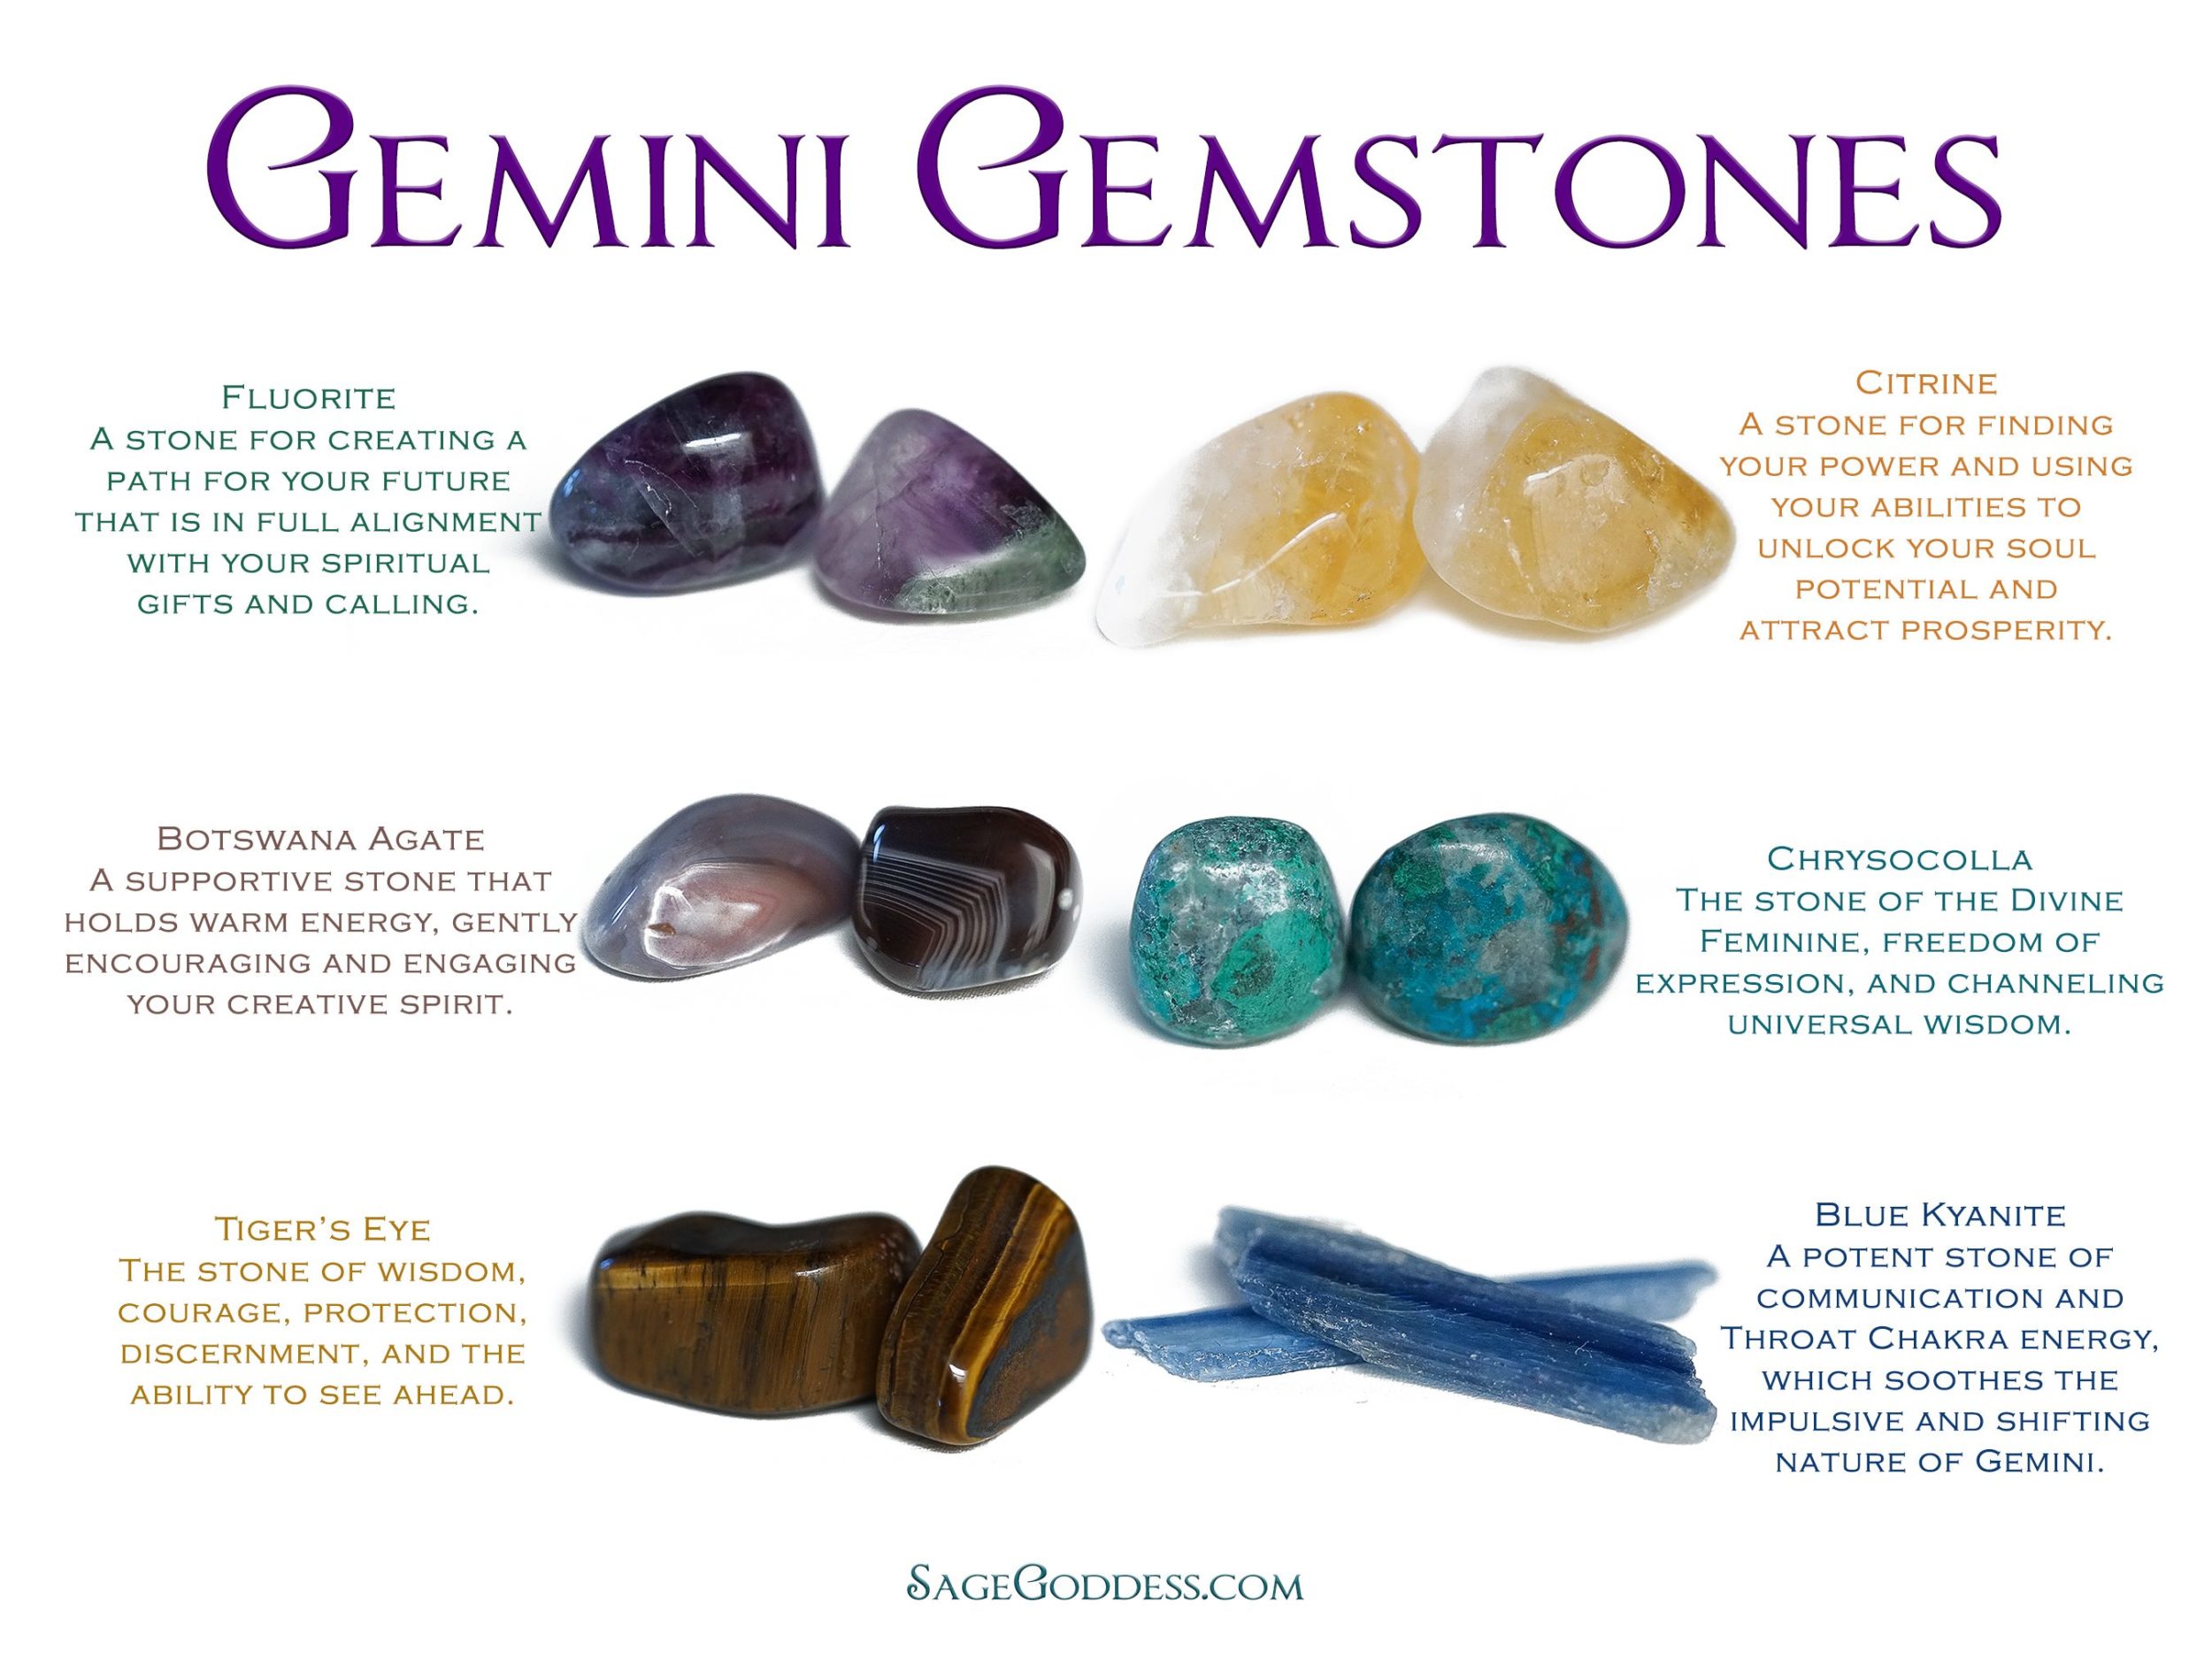 Gemini gemstones